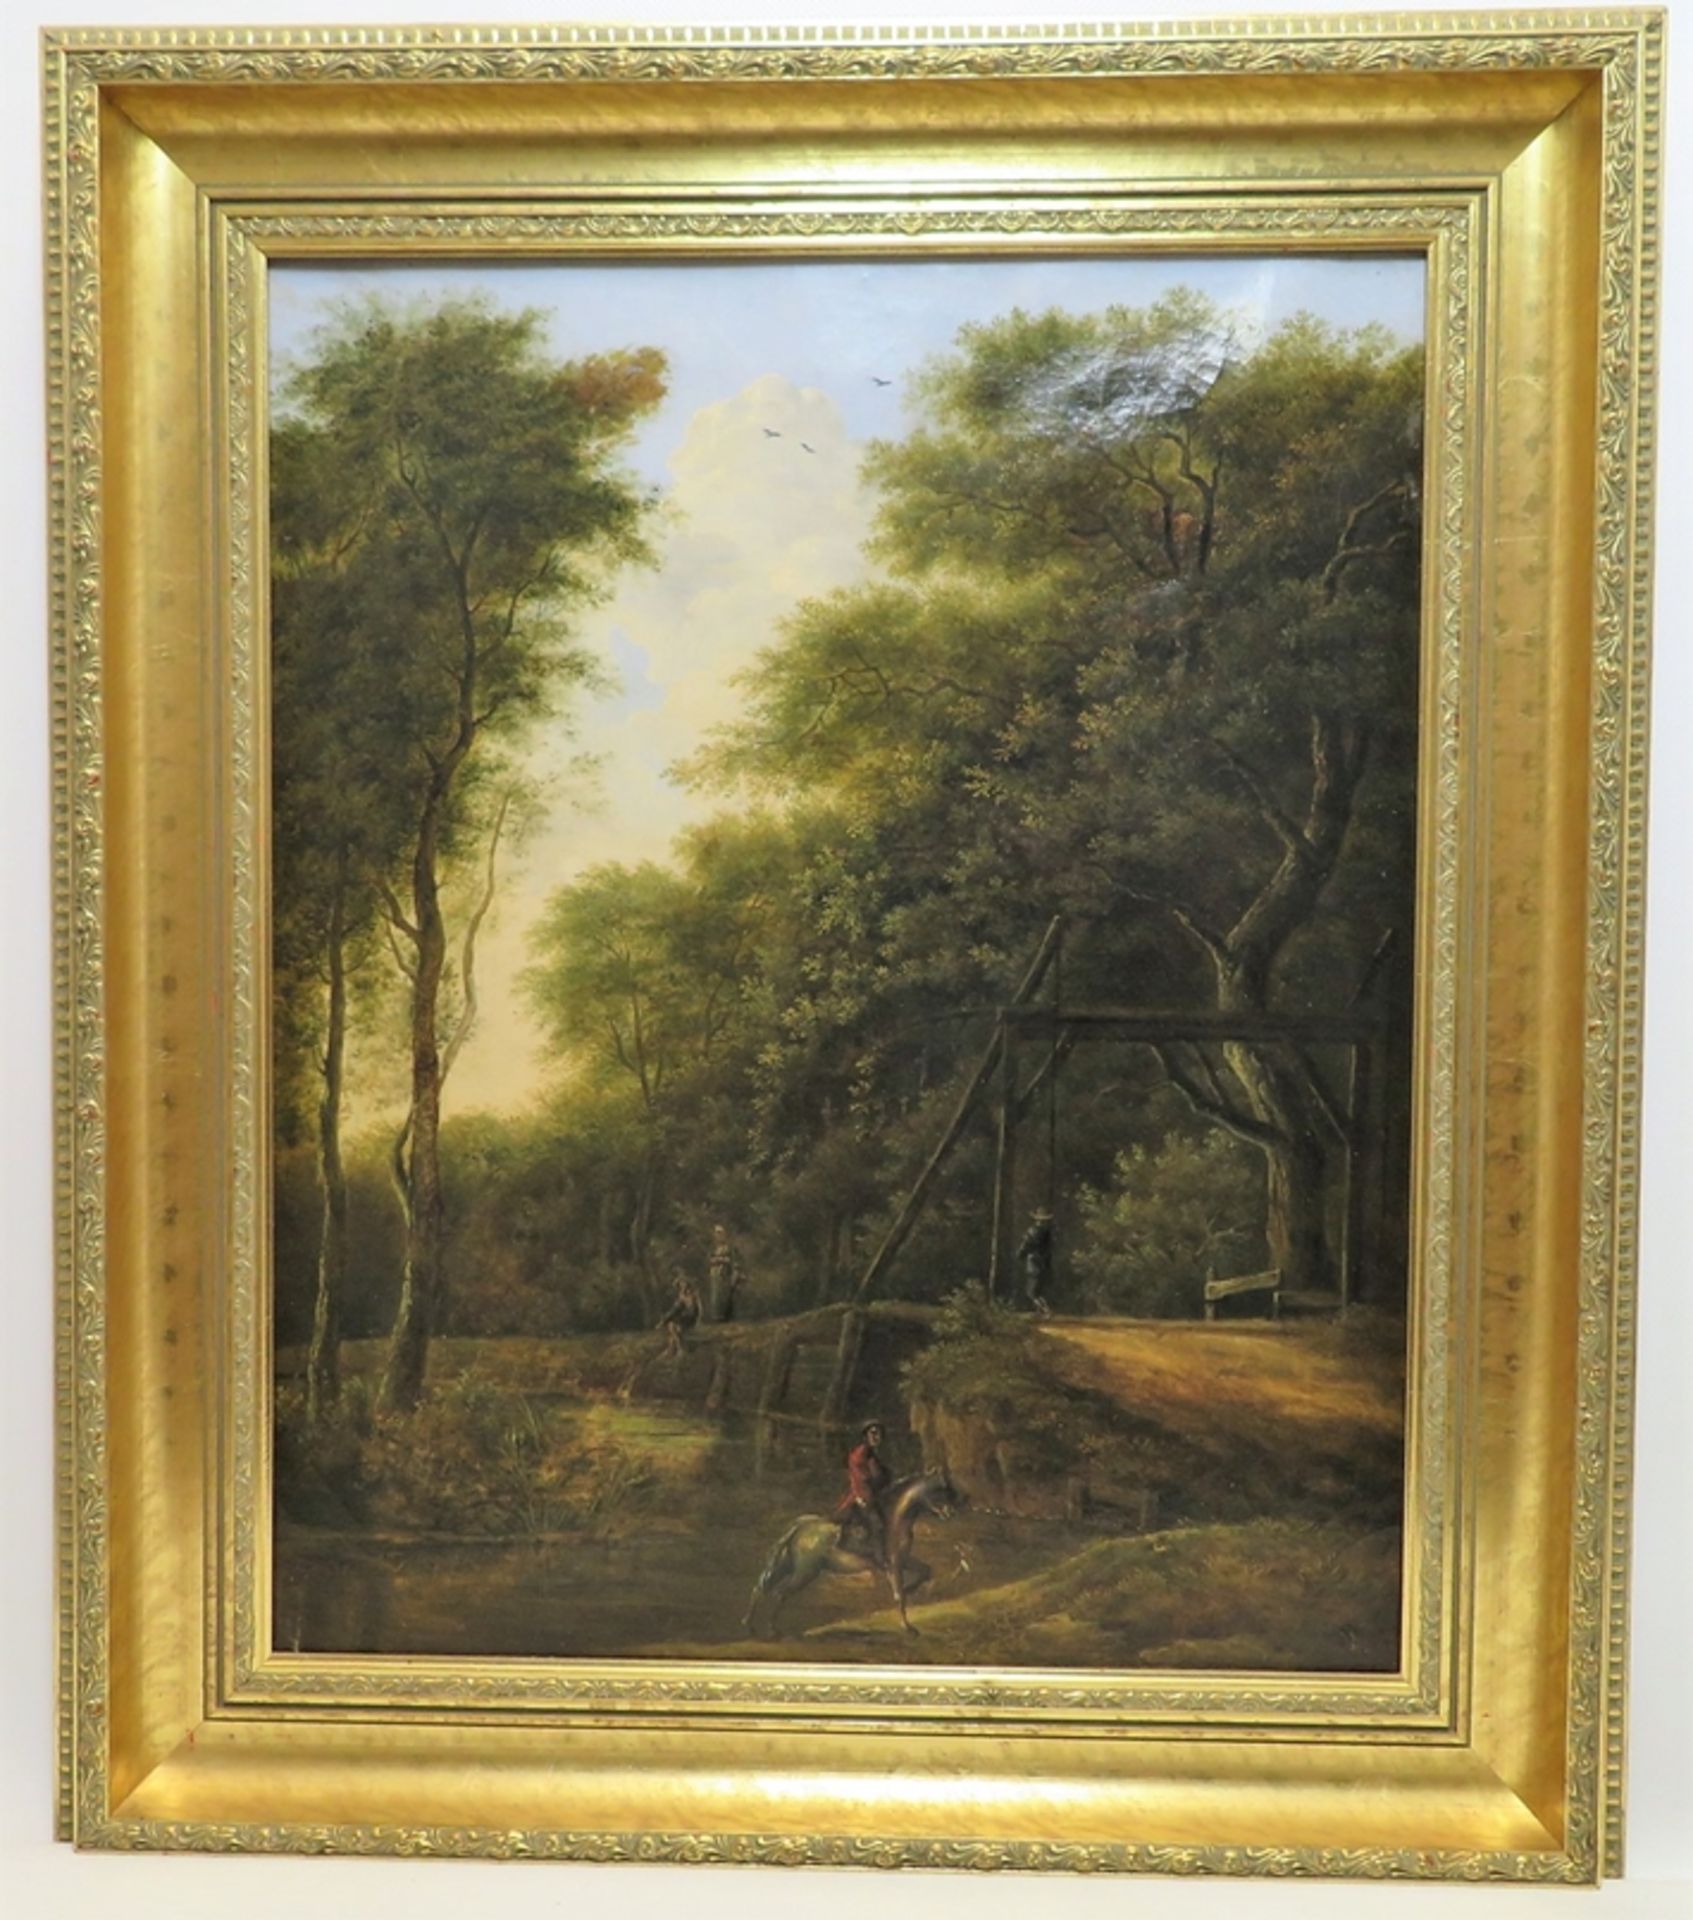 Wohl Klever Schule, 19. Jahrhundert, "Reiter mit Spaziergängern im Wald", Öl/Le